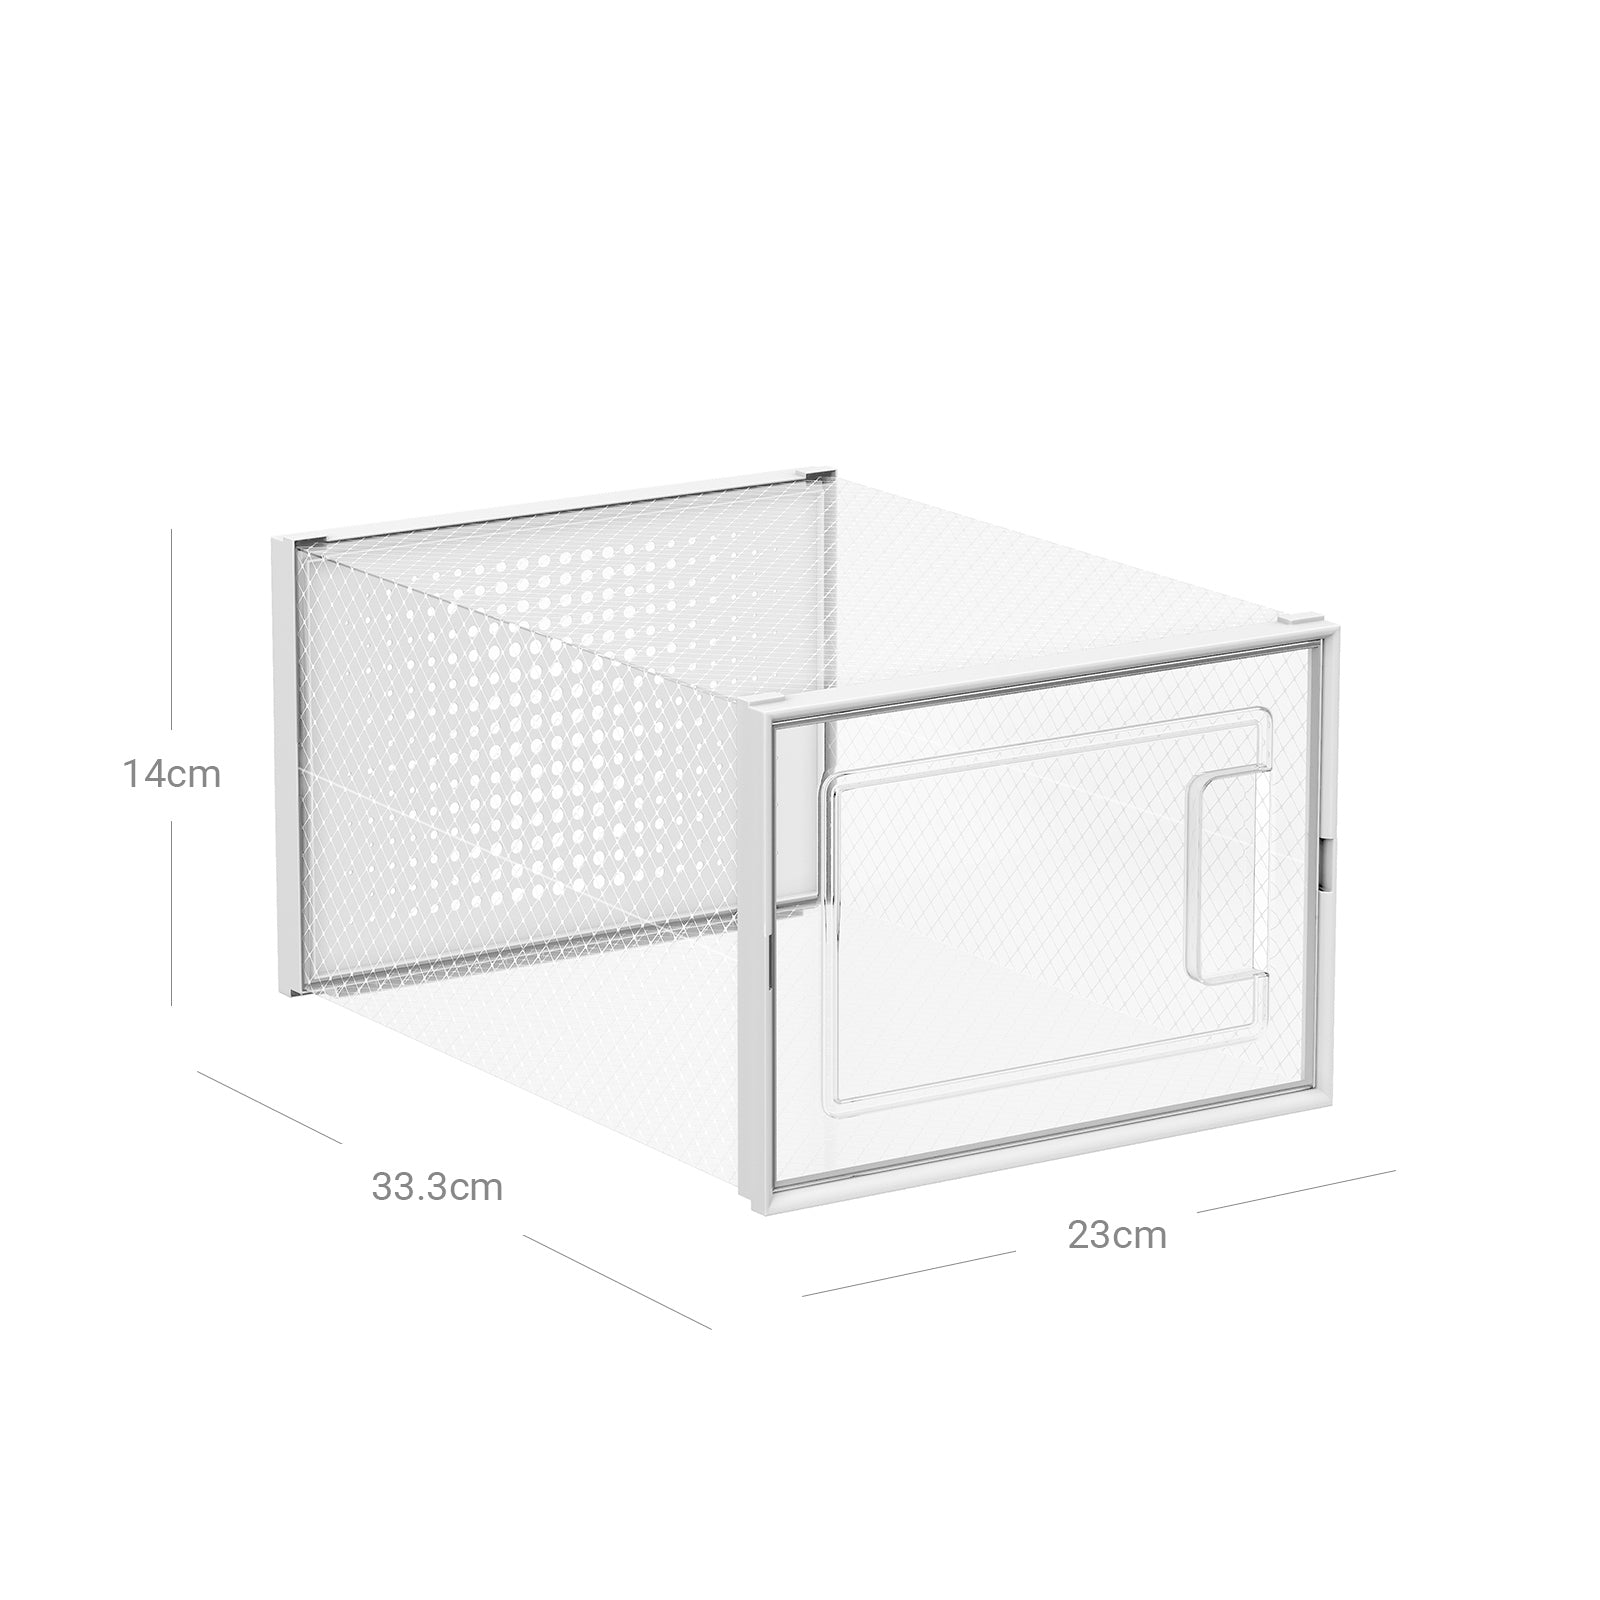 18er-Set Schuhbox Schuhorganizer 33,3 x 23 x 14 cm Weiß-Transparent